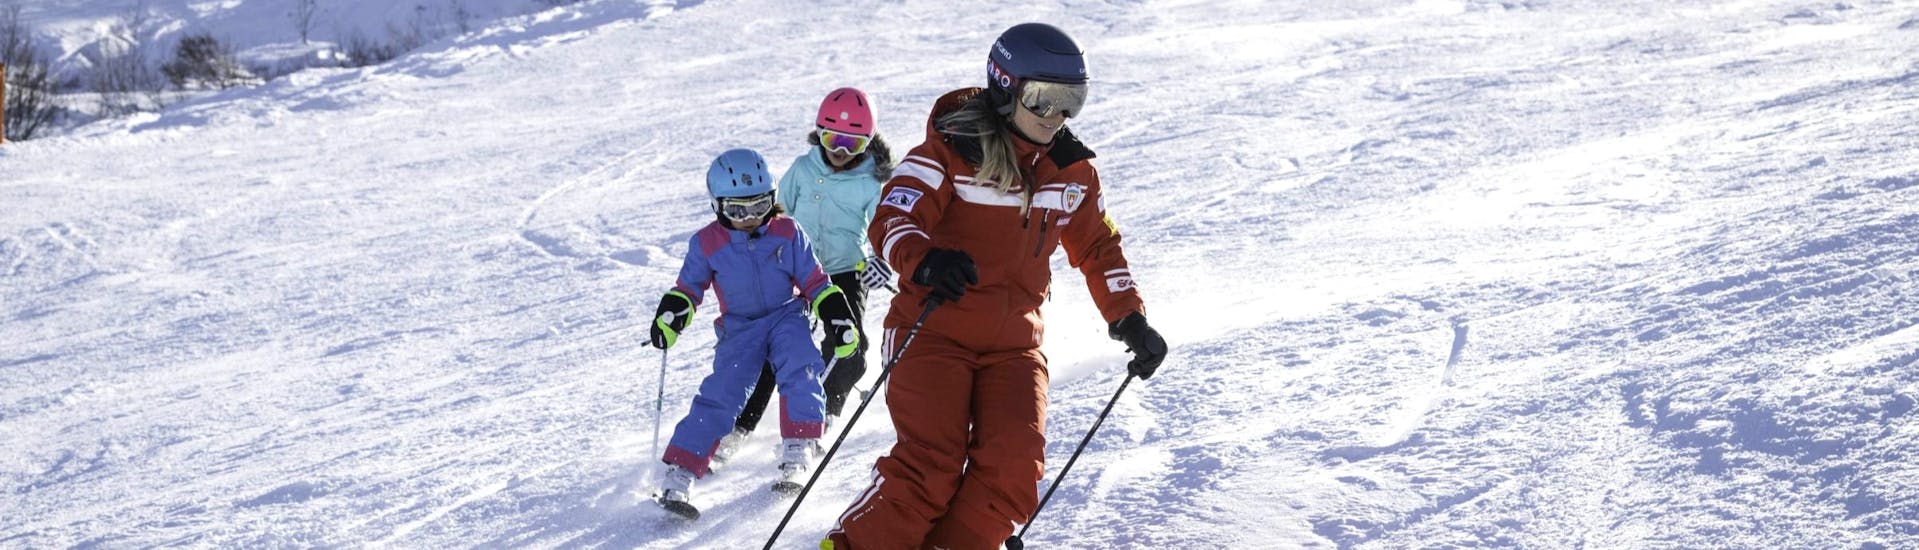 Cours de ski Enfants dès 3 ans - Avancé.